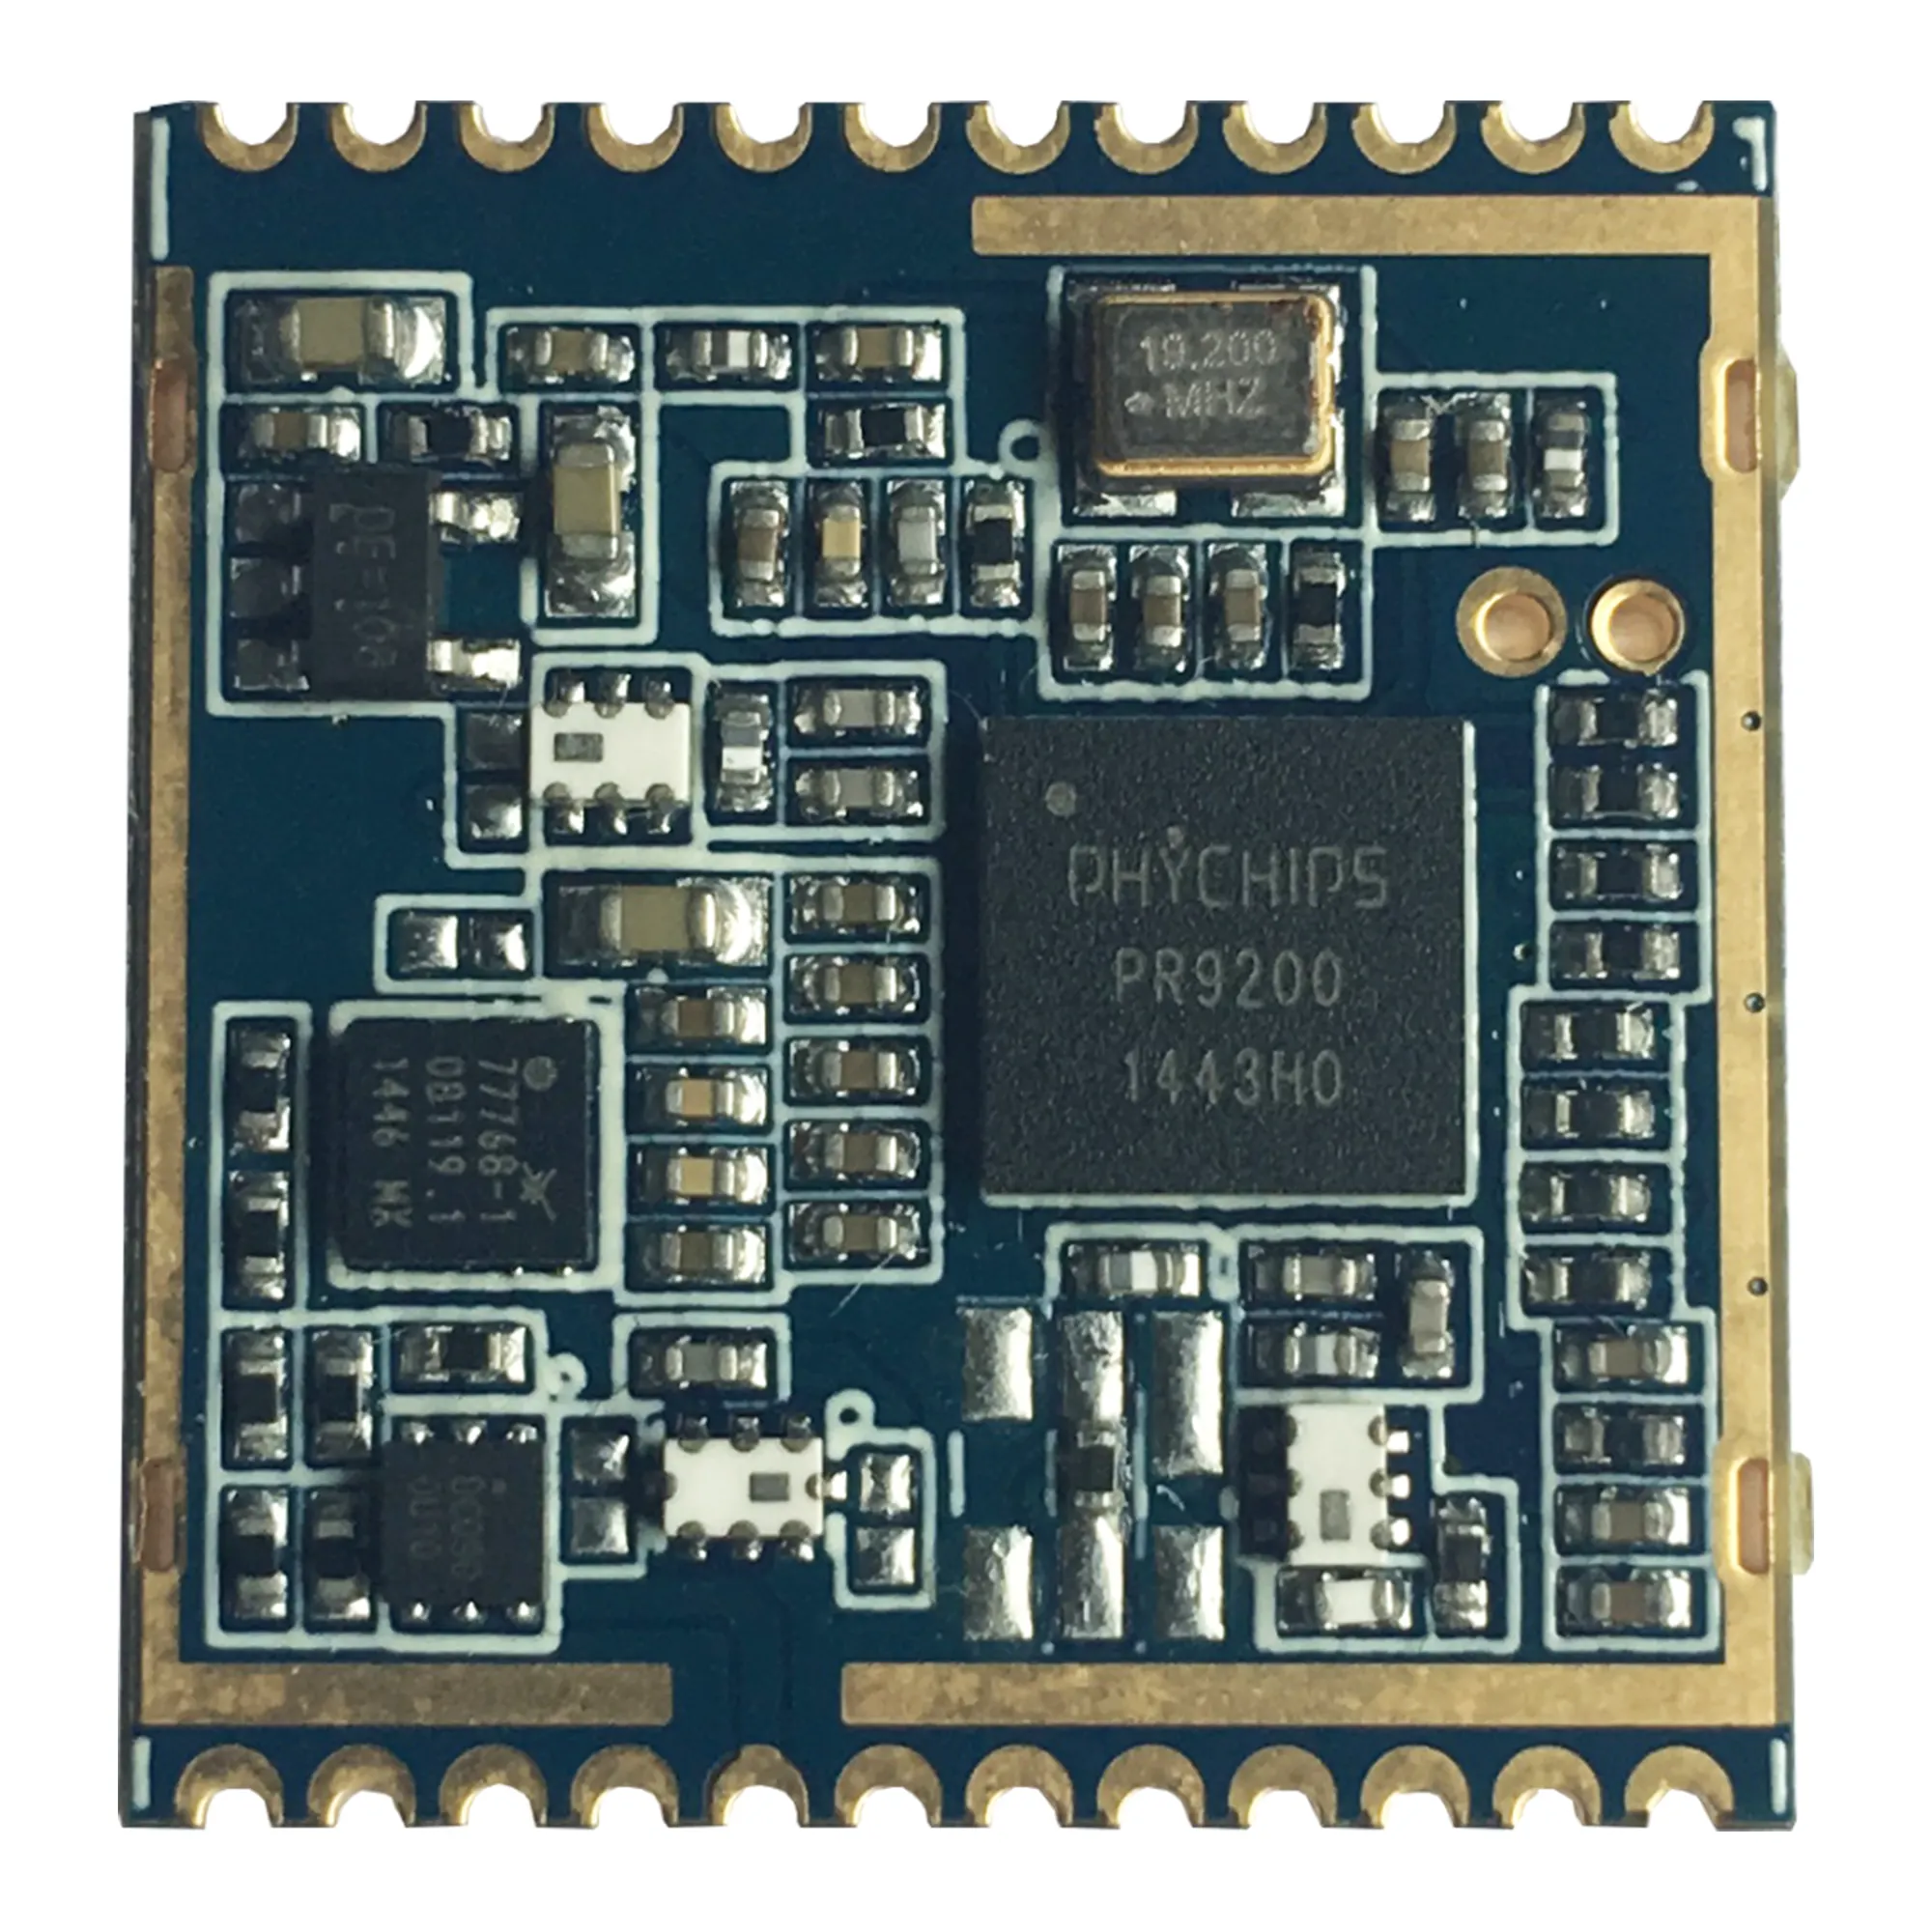 Kleiner Epc Gen2 Raspberry PI-Controller UHF-RFID-Lese modul mit RF-Chip PR9200